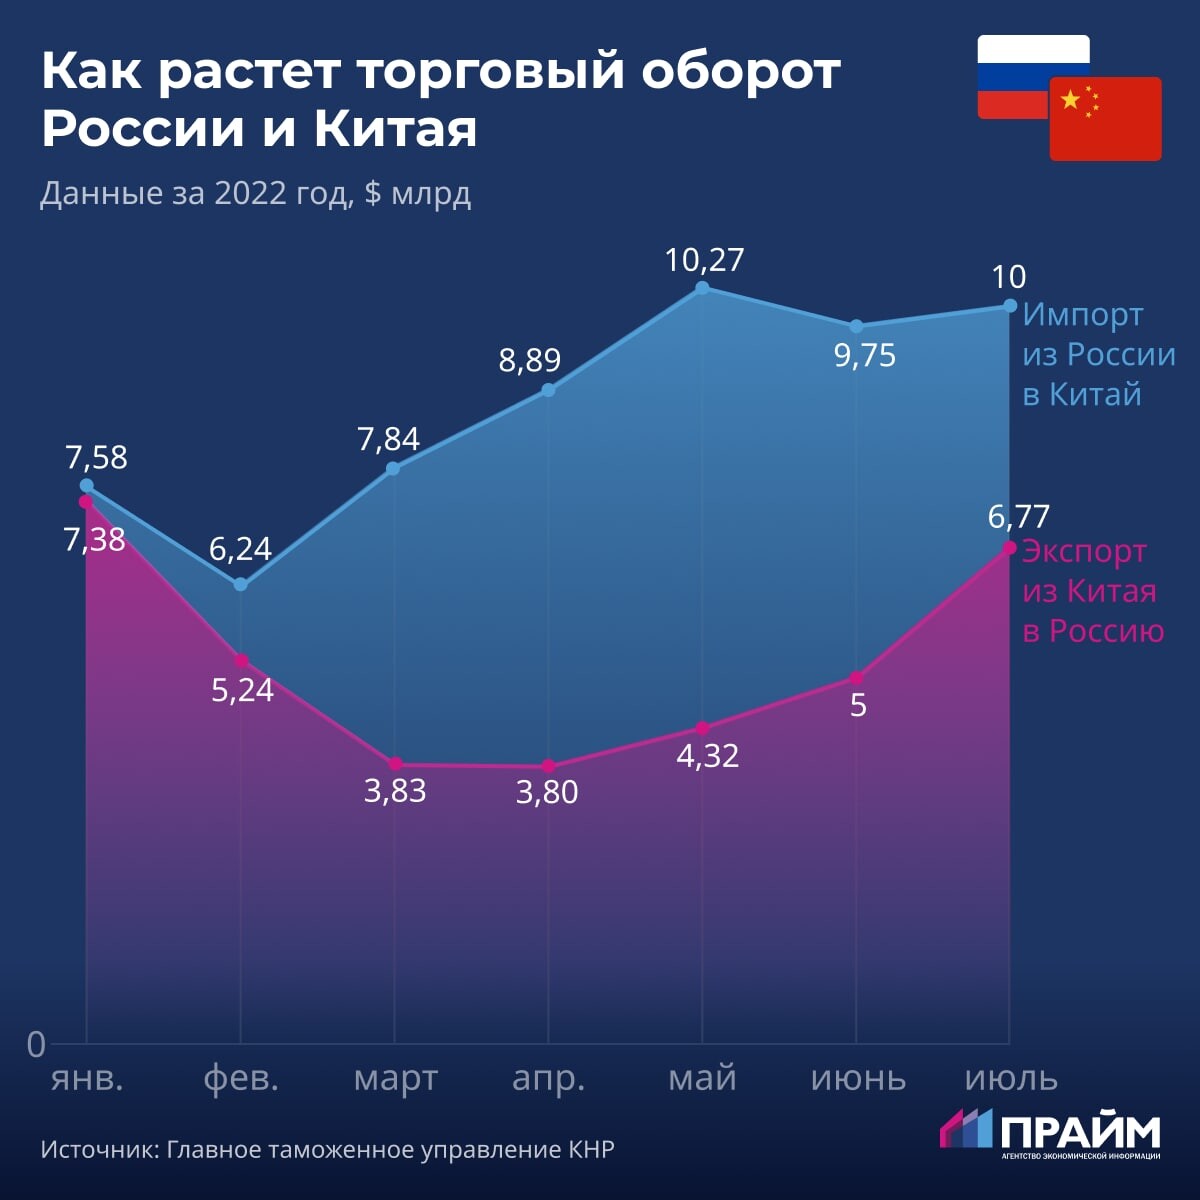 Товарооборот между Россией и Китаем в 2022 году